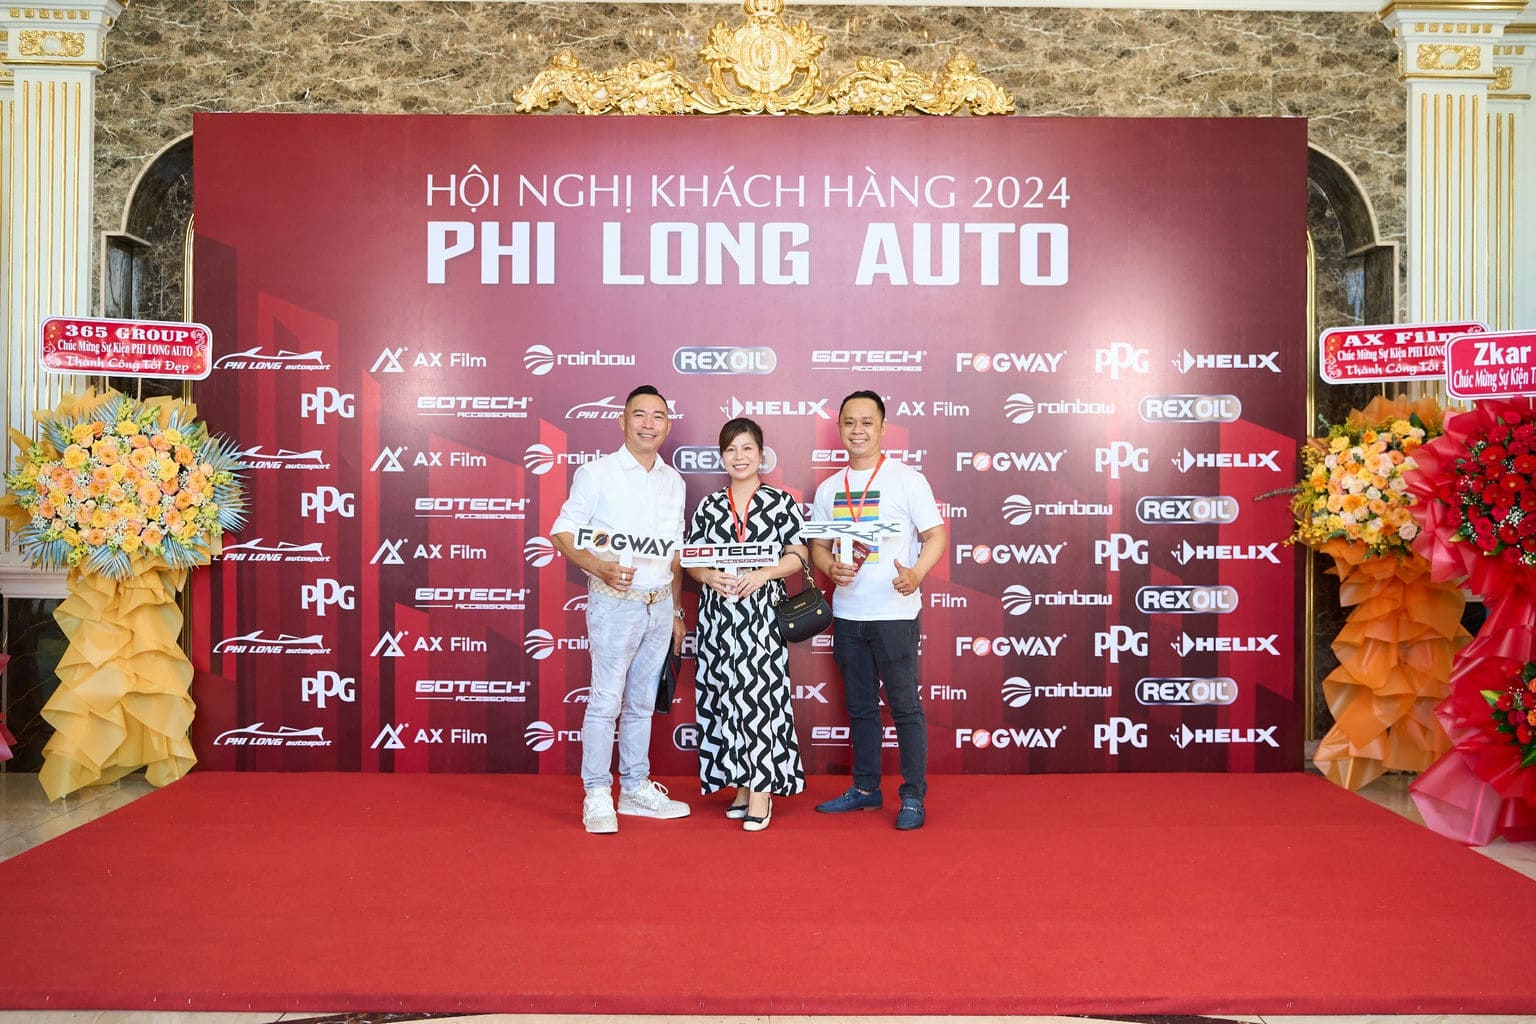 HOI NGHI KHACH HANG PHI LONG AUTO 2024 40 | Phi Long Auto